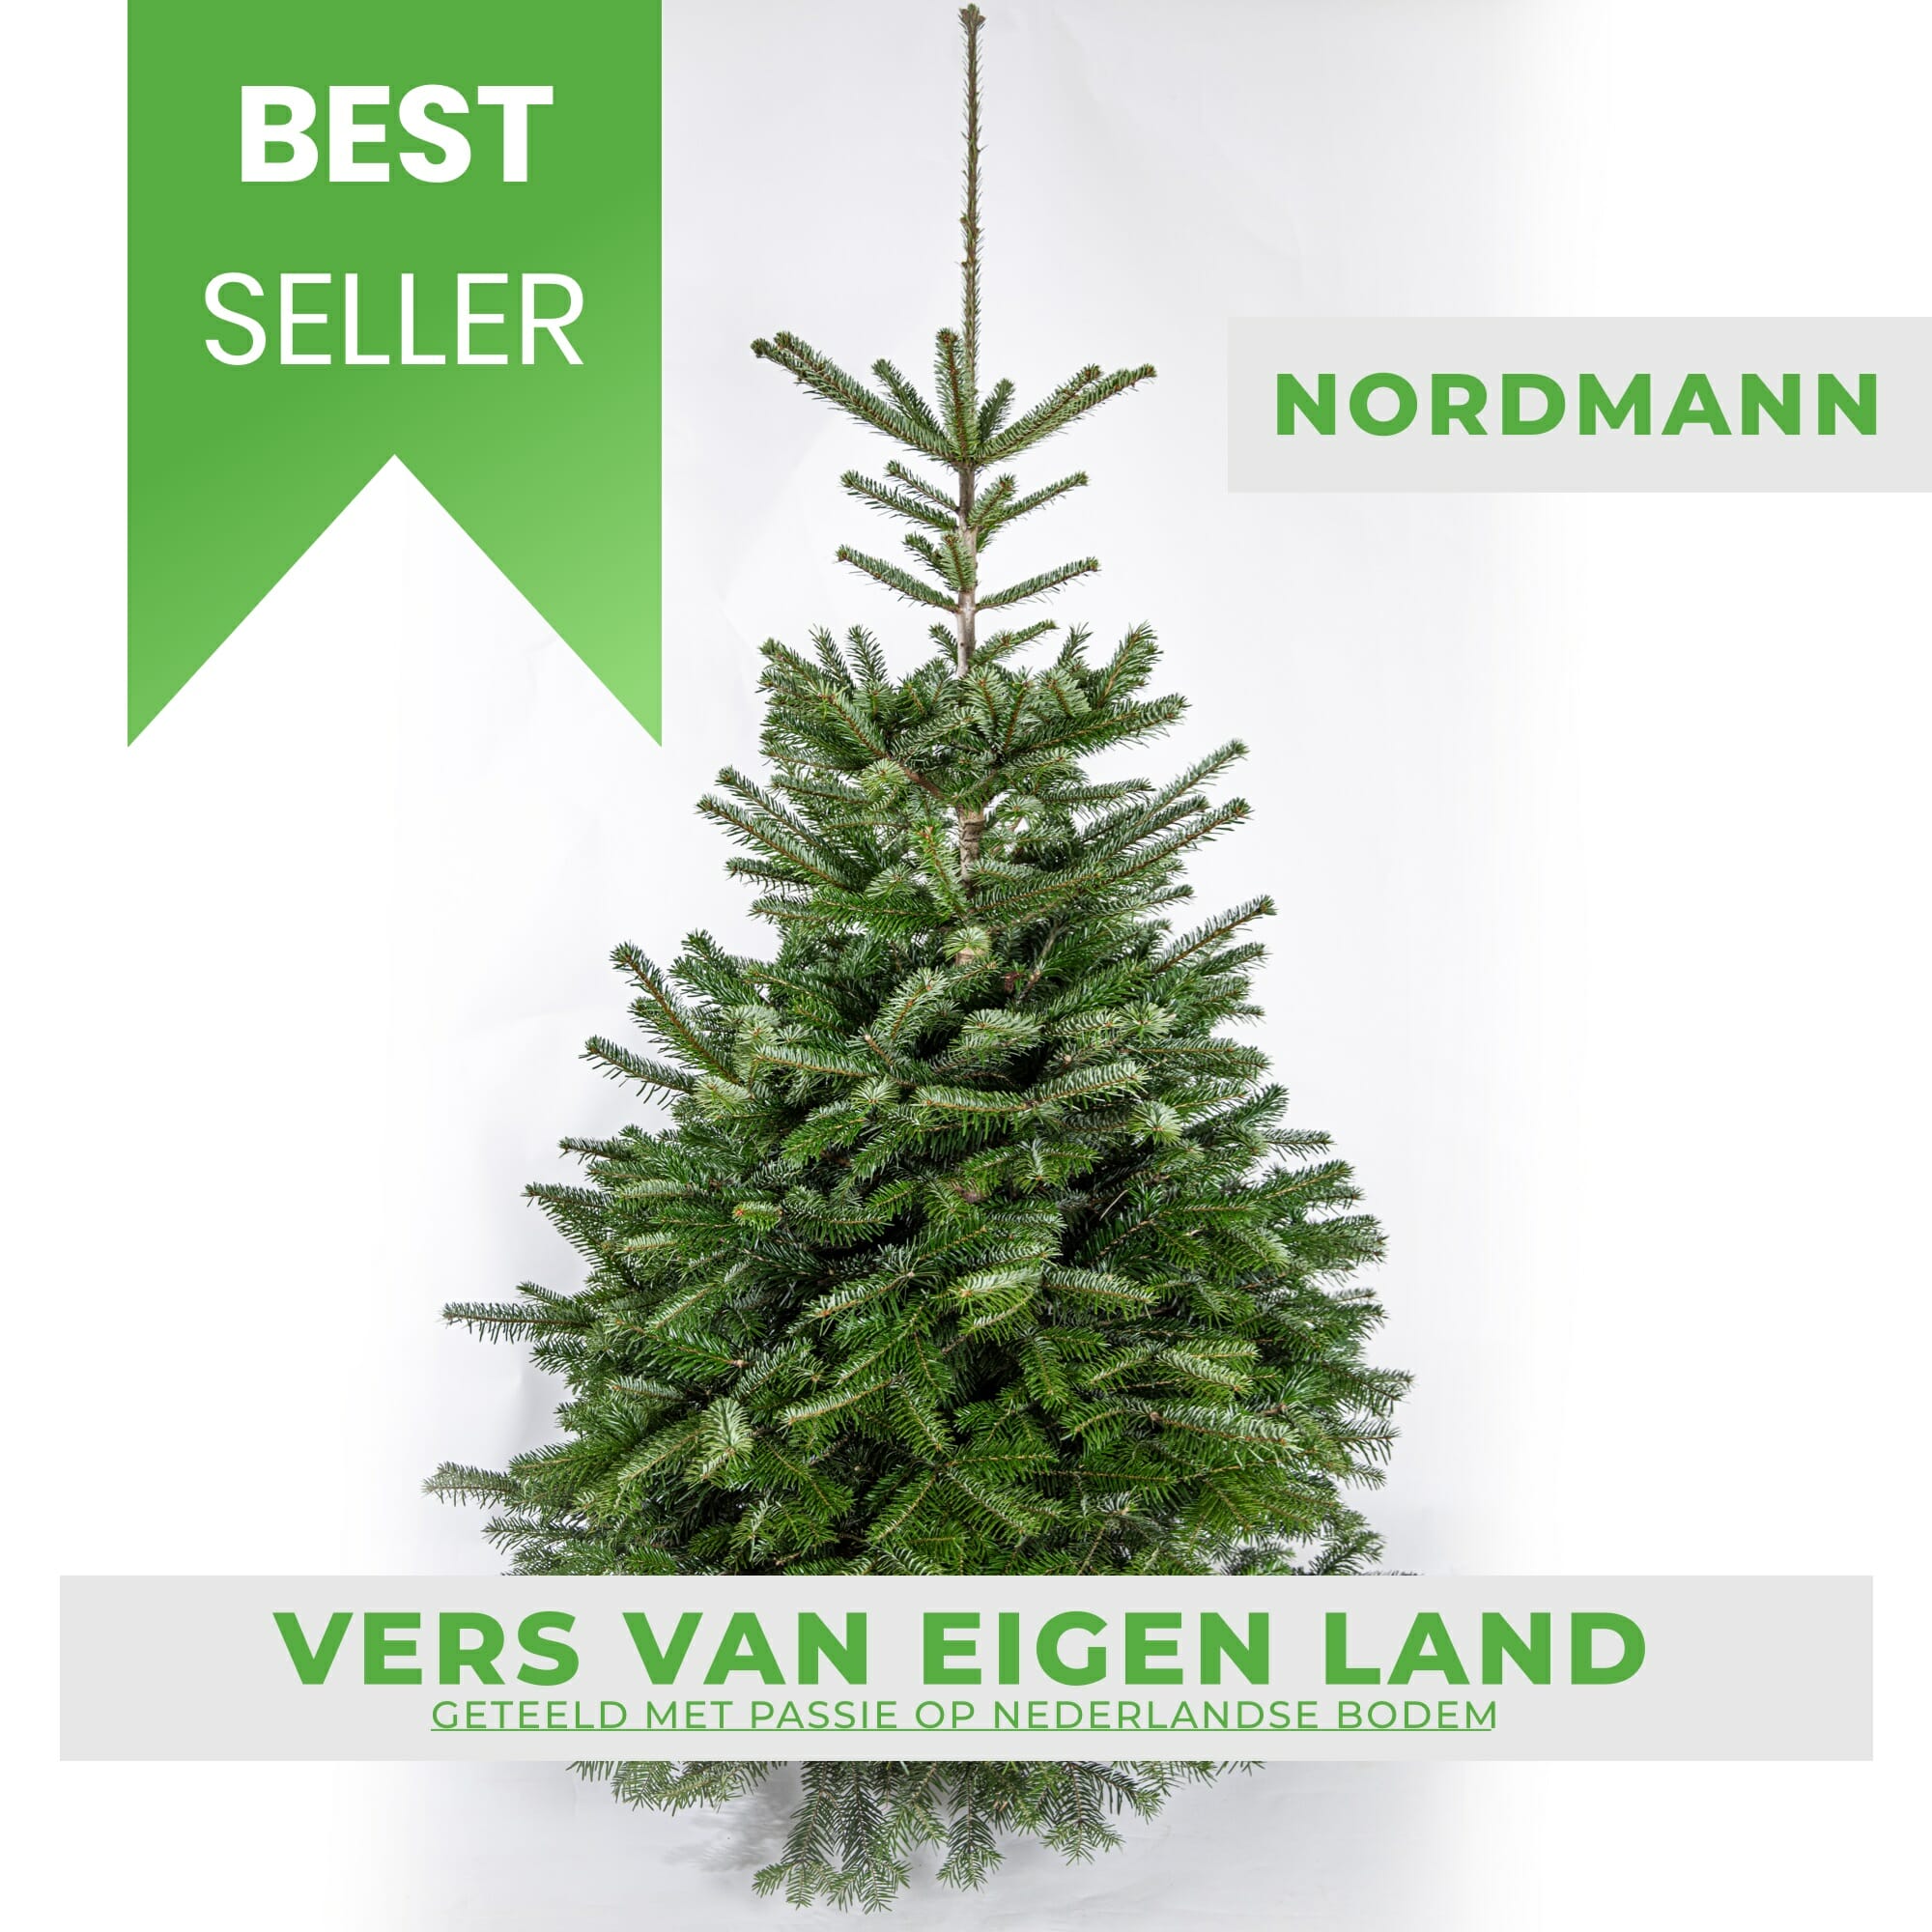 Oprechtheid kaping Contractie Nordmann 200-225cm gezaagd - Echte kerstboom kopen